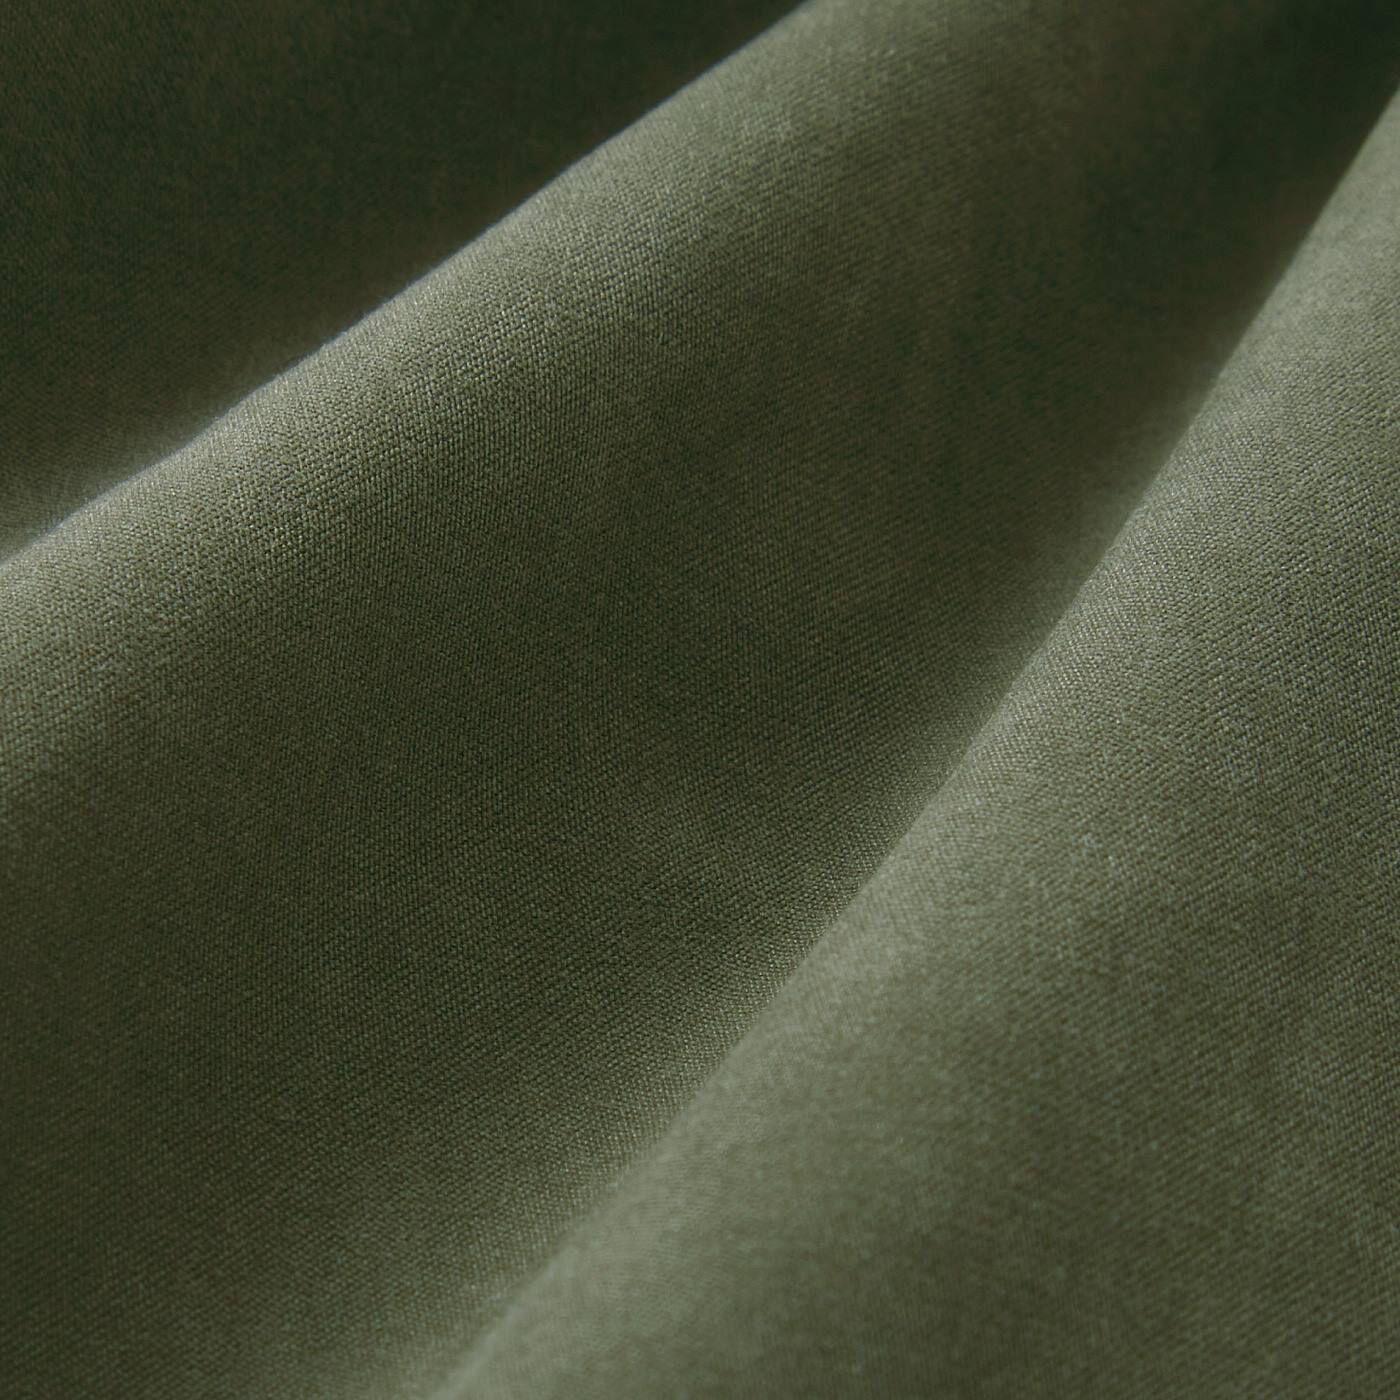 frauglatt|フラウグラット　一枚であったか♪　さっと上品スタイル完成　フェイクスエード素材のダブルボトムスの会|スカーチョ部分は適度な張りと落ち感のあるスエード調の布はく。